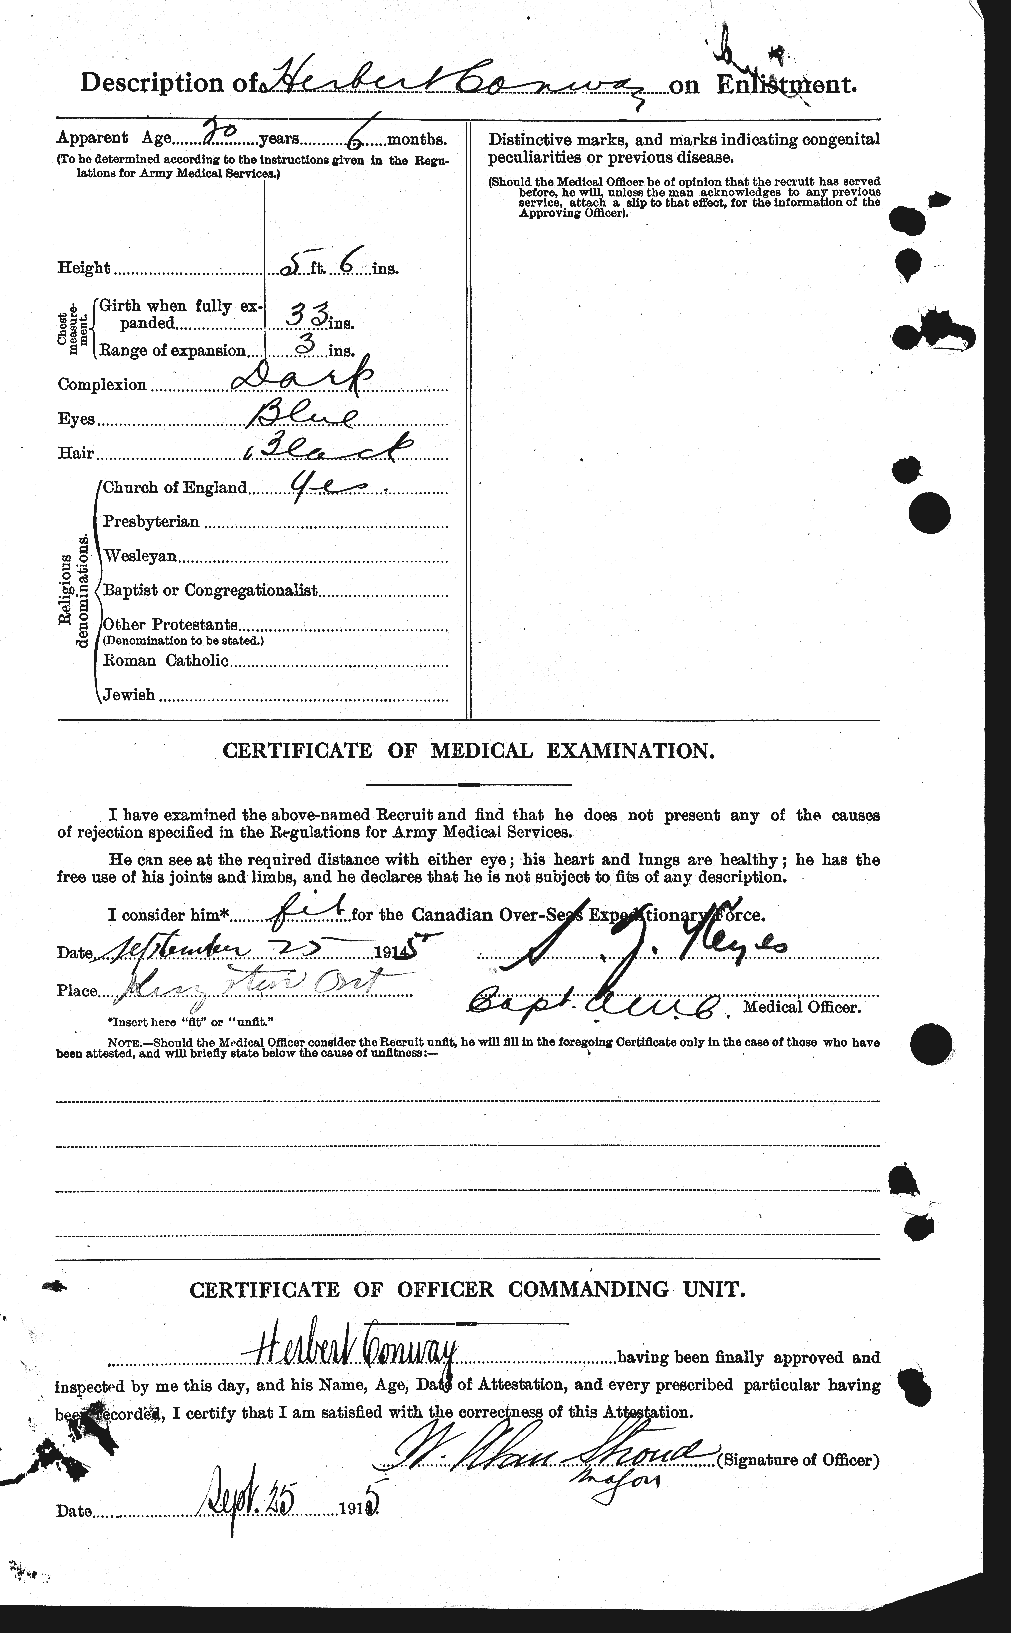 Dossiers du Personnel de la Première Guerre mondiale - CEC 073362b